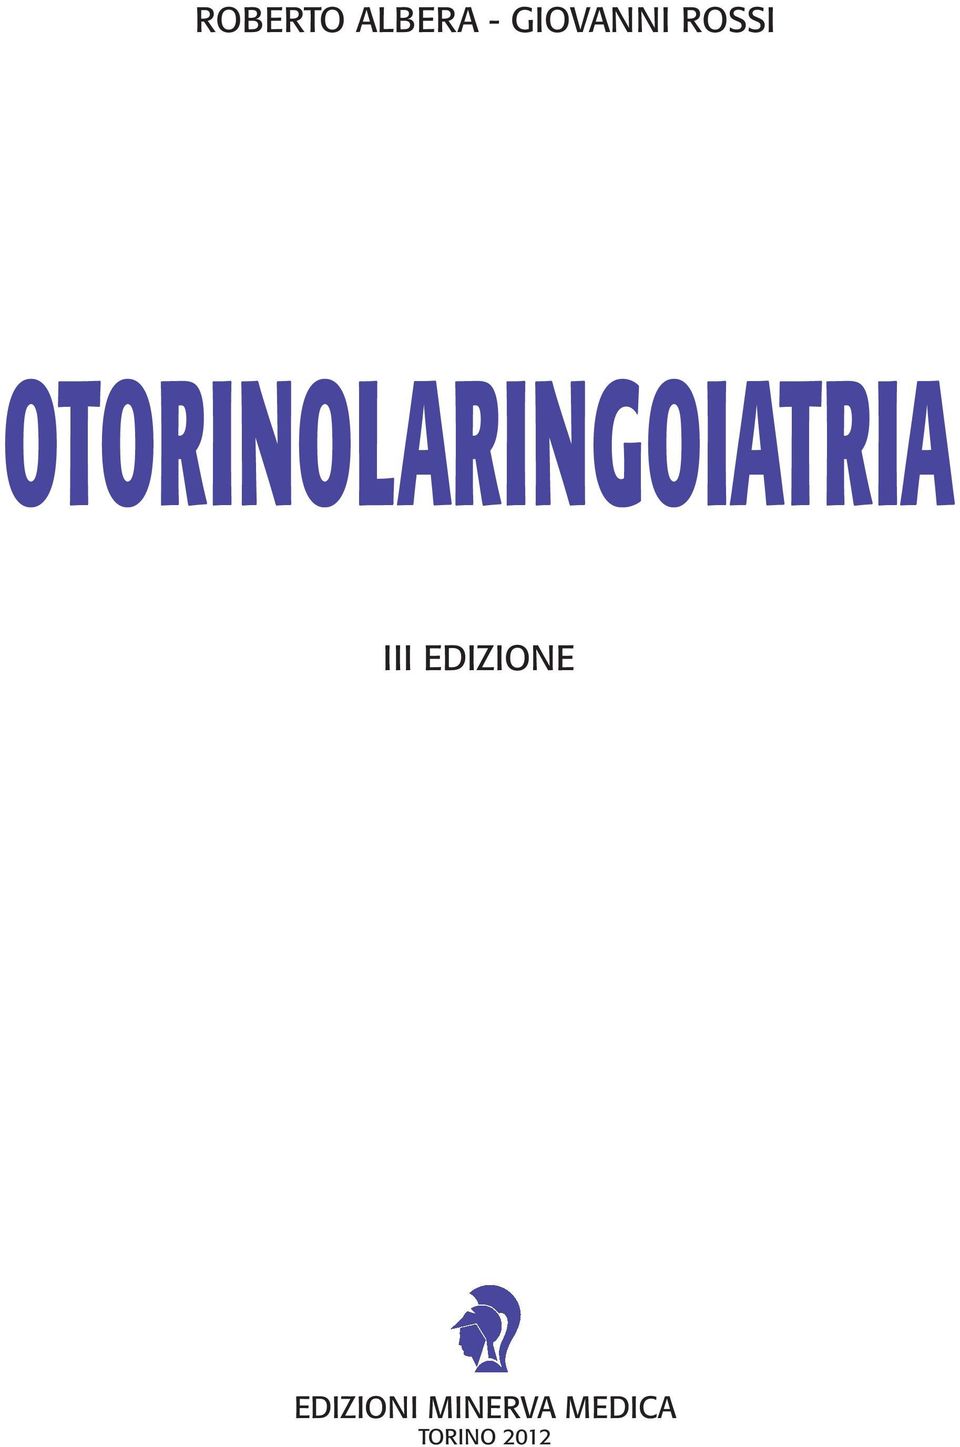 OTORINOLARINGOIATRIA III